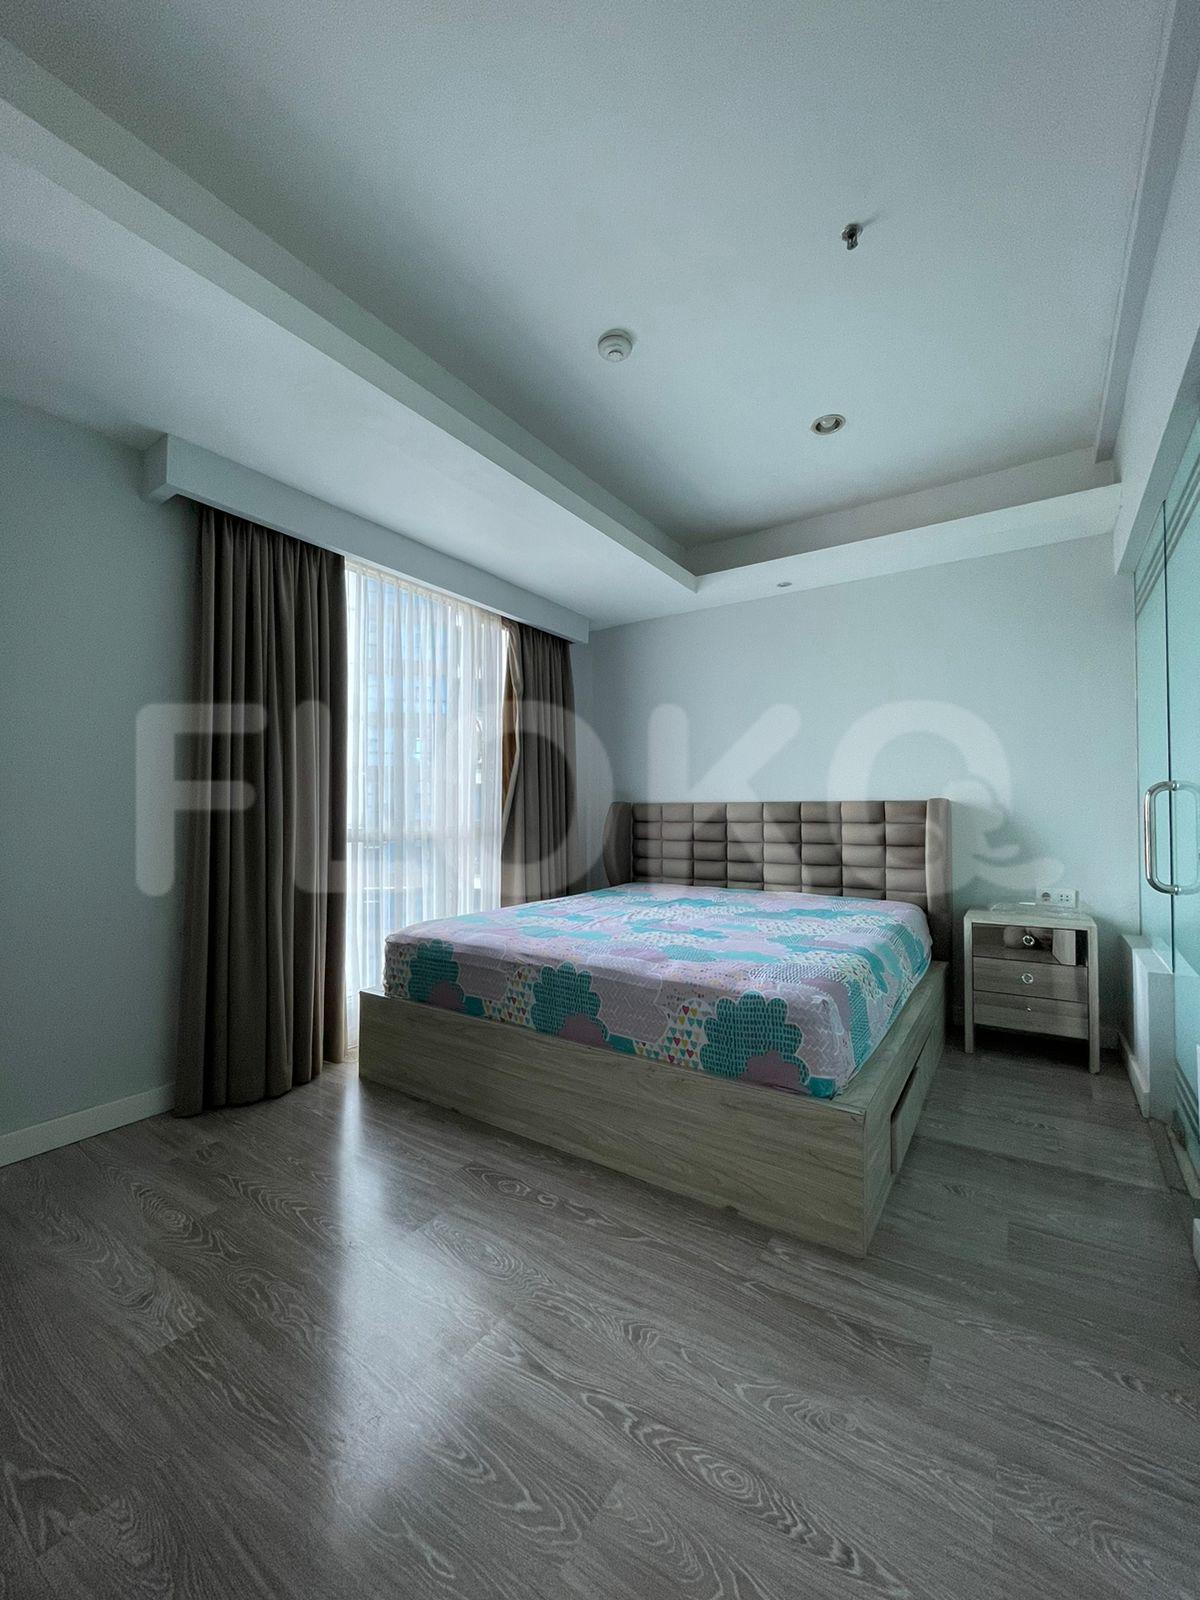 3 Bedroom on 5th Floor fte1f1 for Rent in Casa Grande